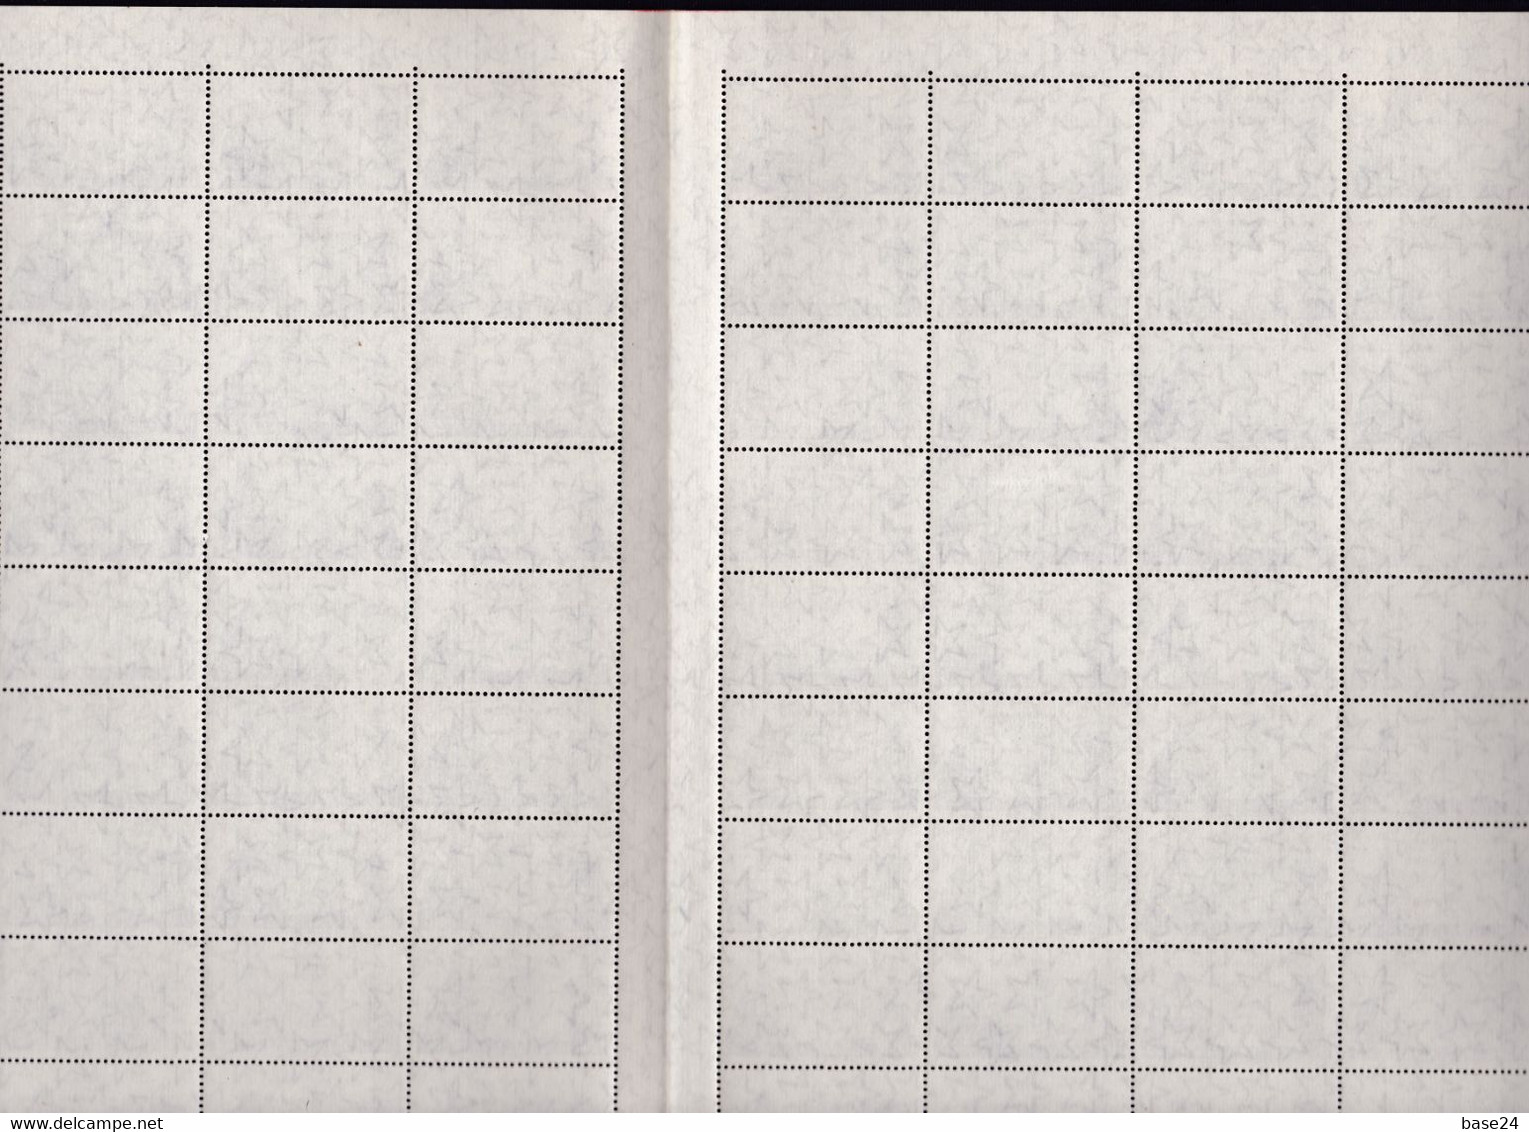 1959 Italia Repubblica PATTI LATERANENSI 100 Valori In Doppio Foglio Di 50 MNH** LATERAN PACTS Double Sheet - Full Sheets